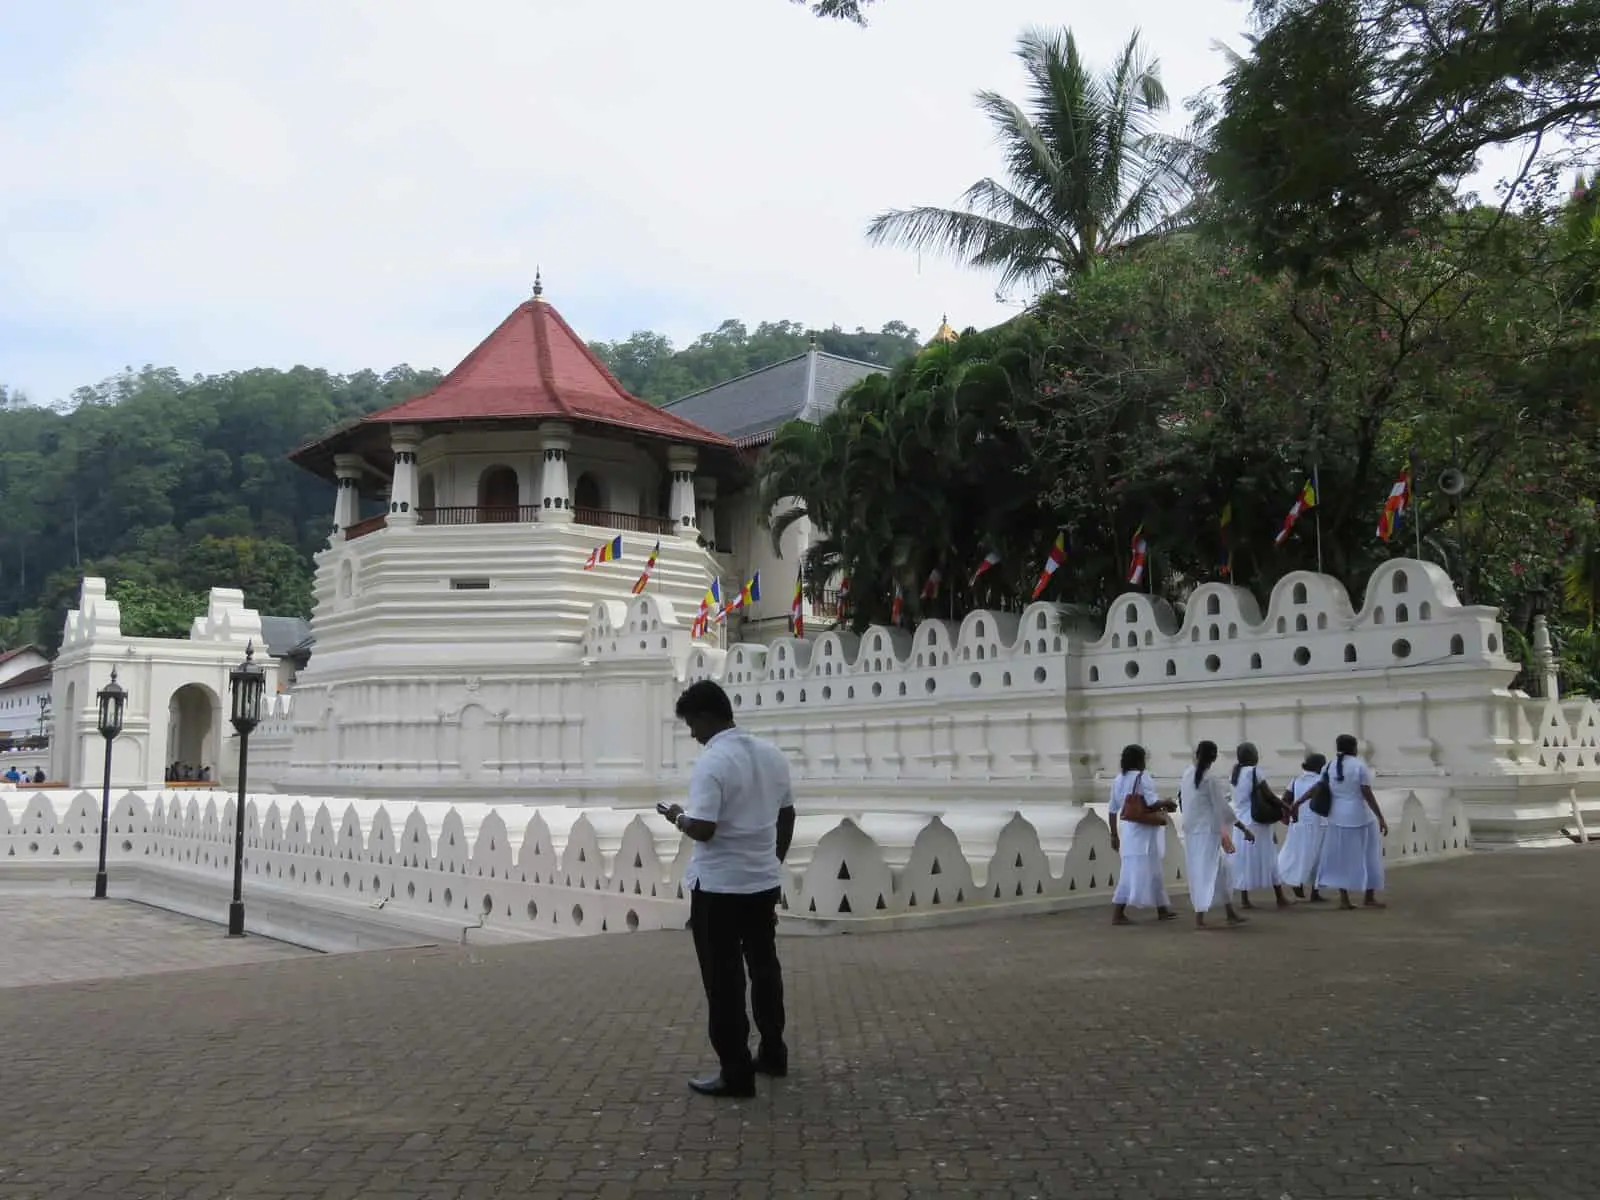 Kandy in Sri Lanka